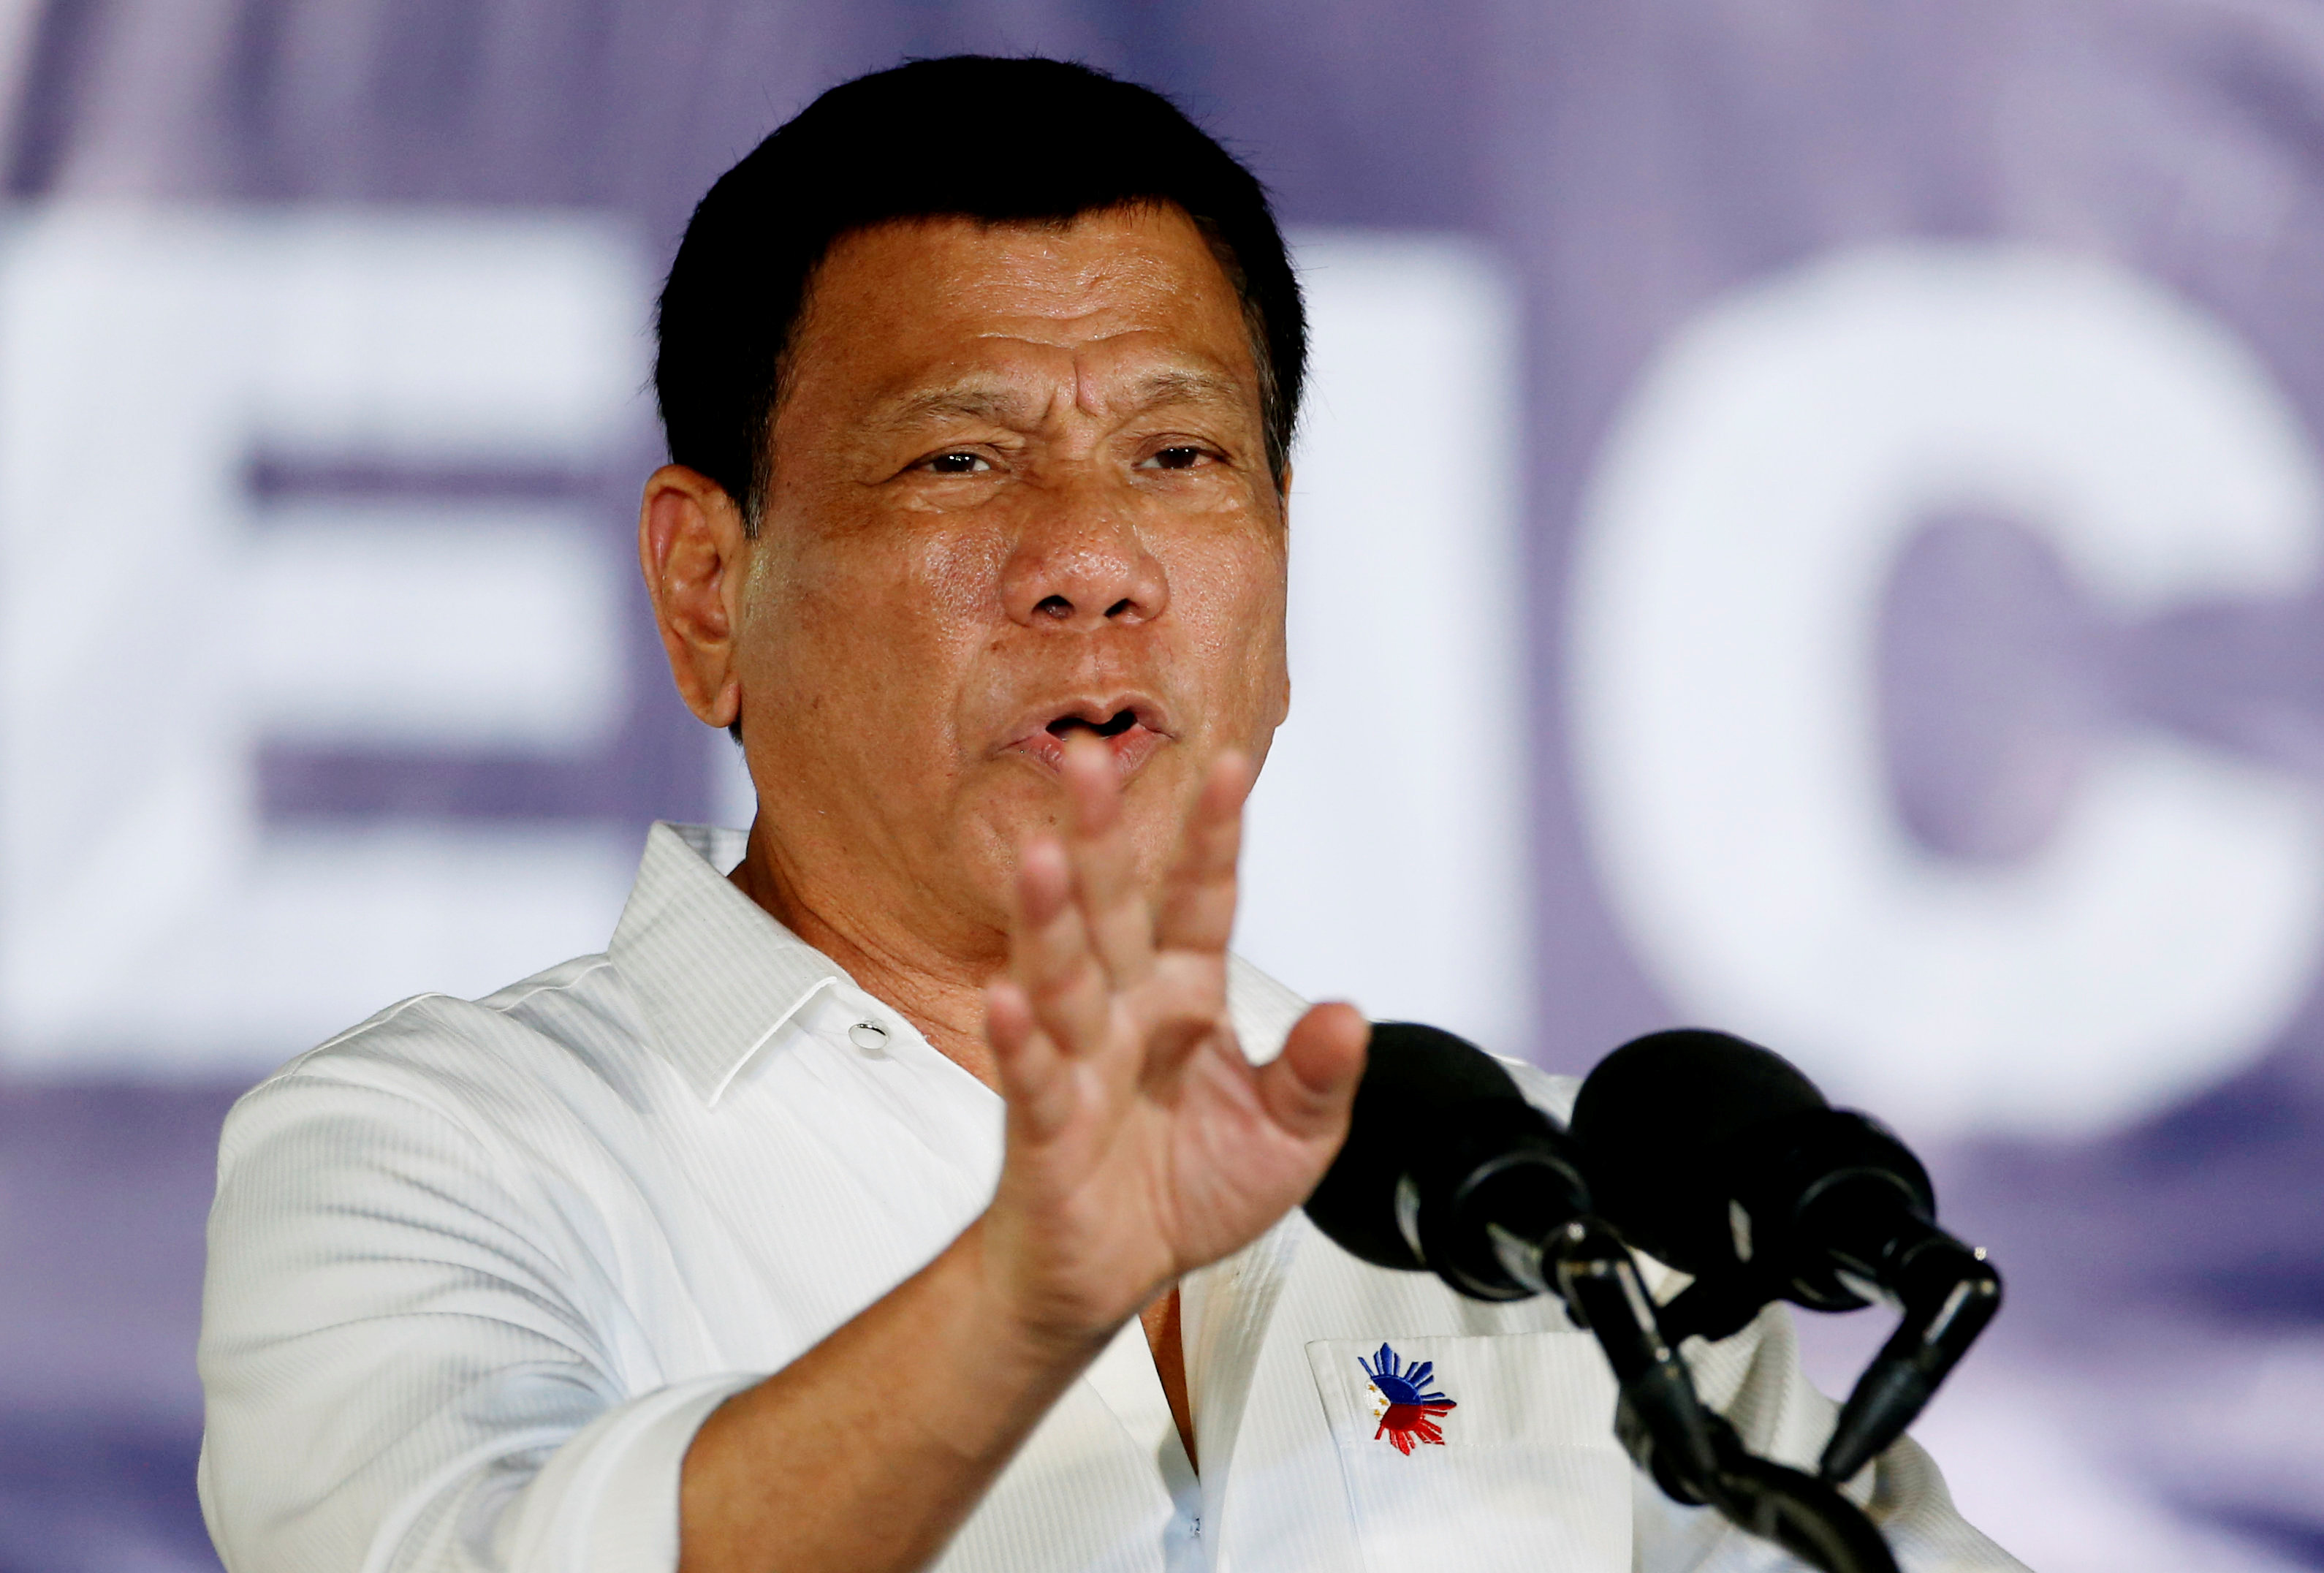 Pese a las críticas, Duterte conserva un apoyo del 63 por ciento en las últimas encuestas.